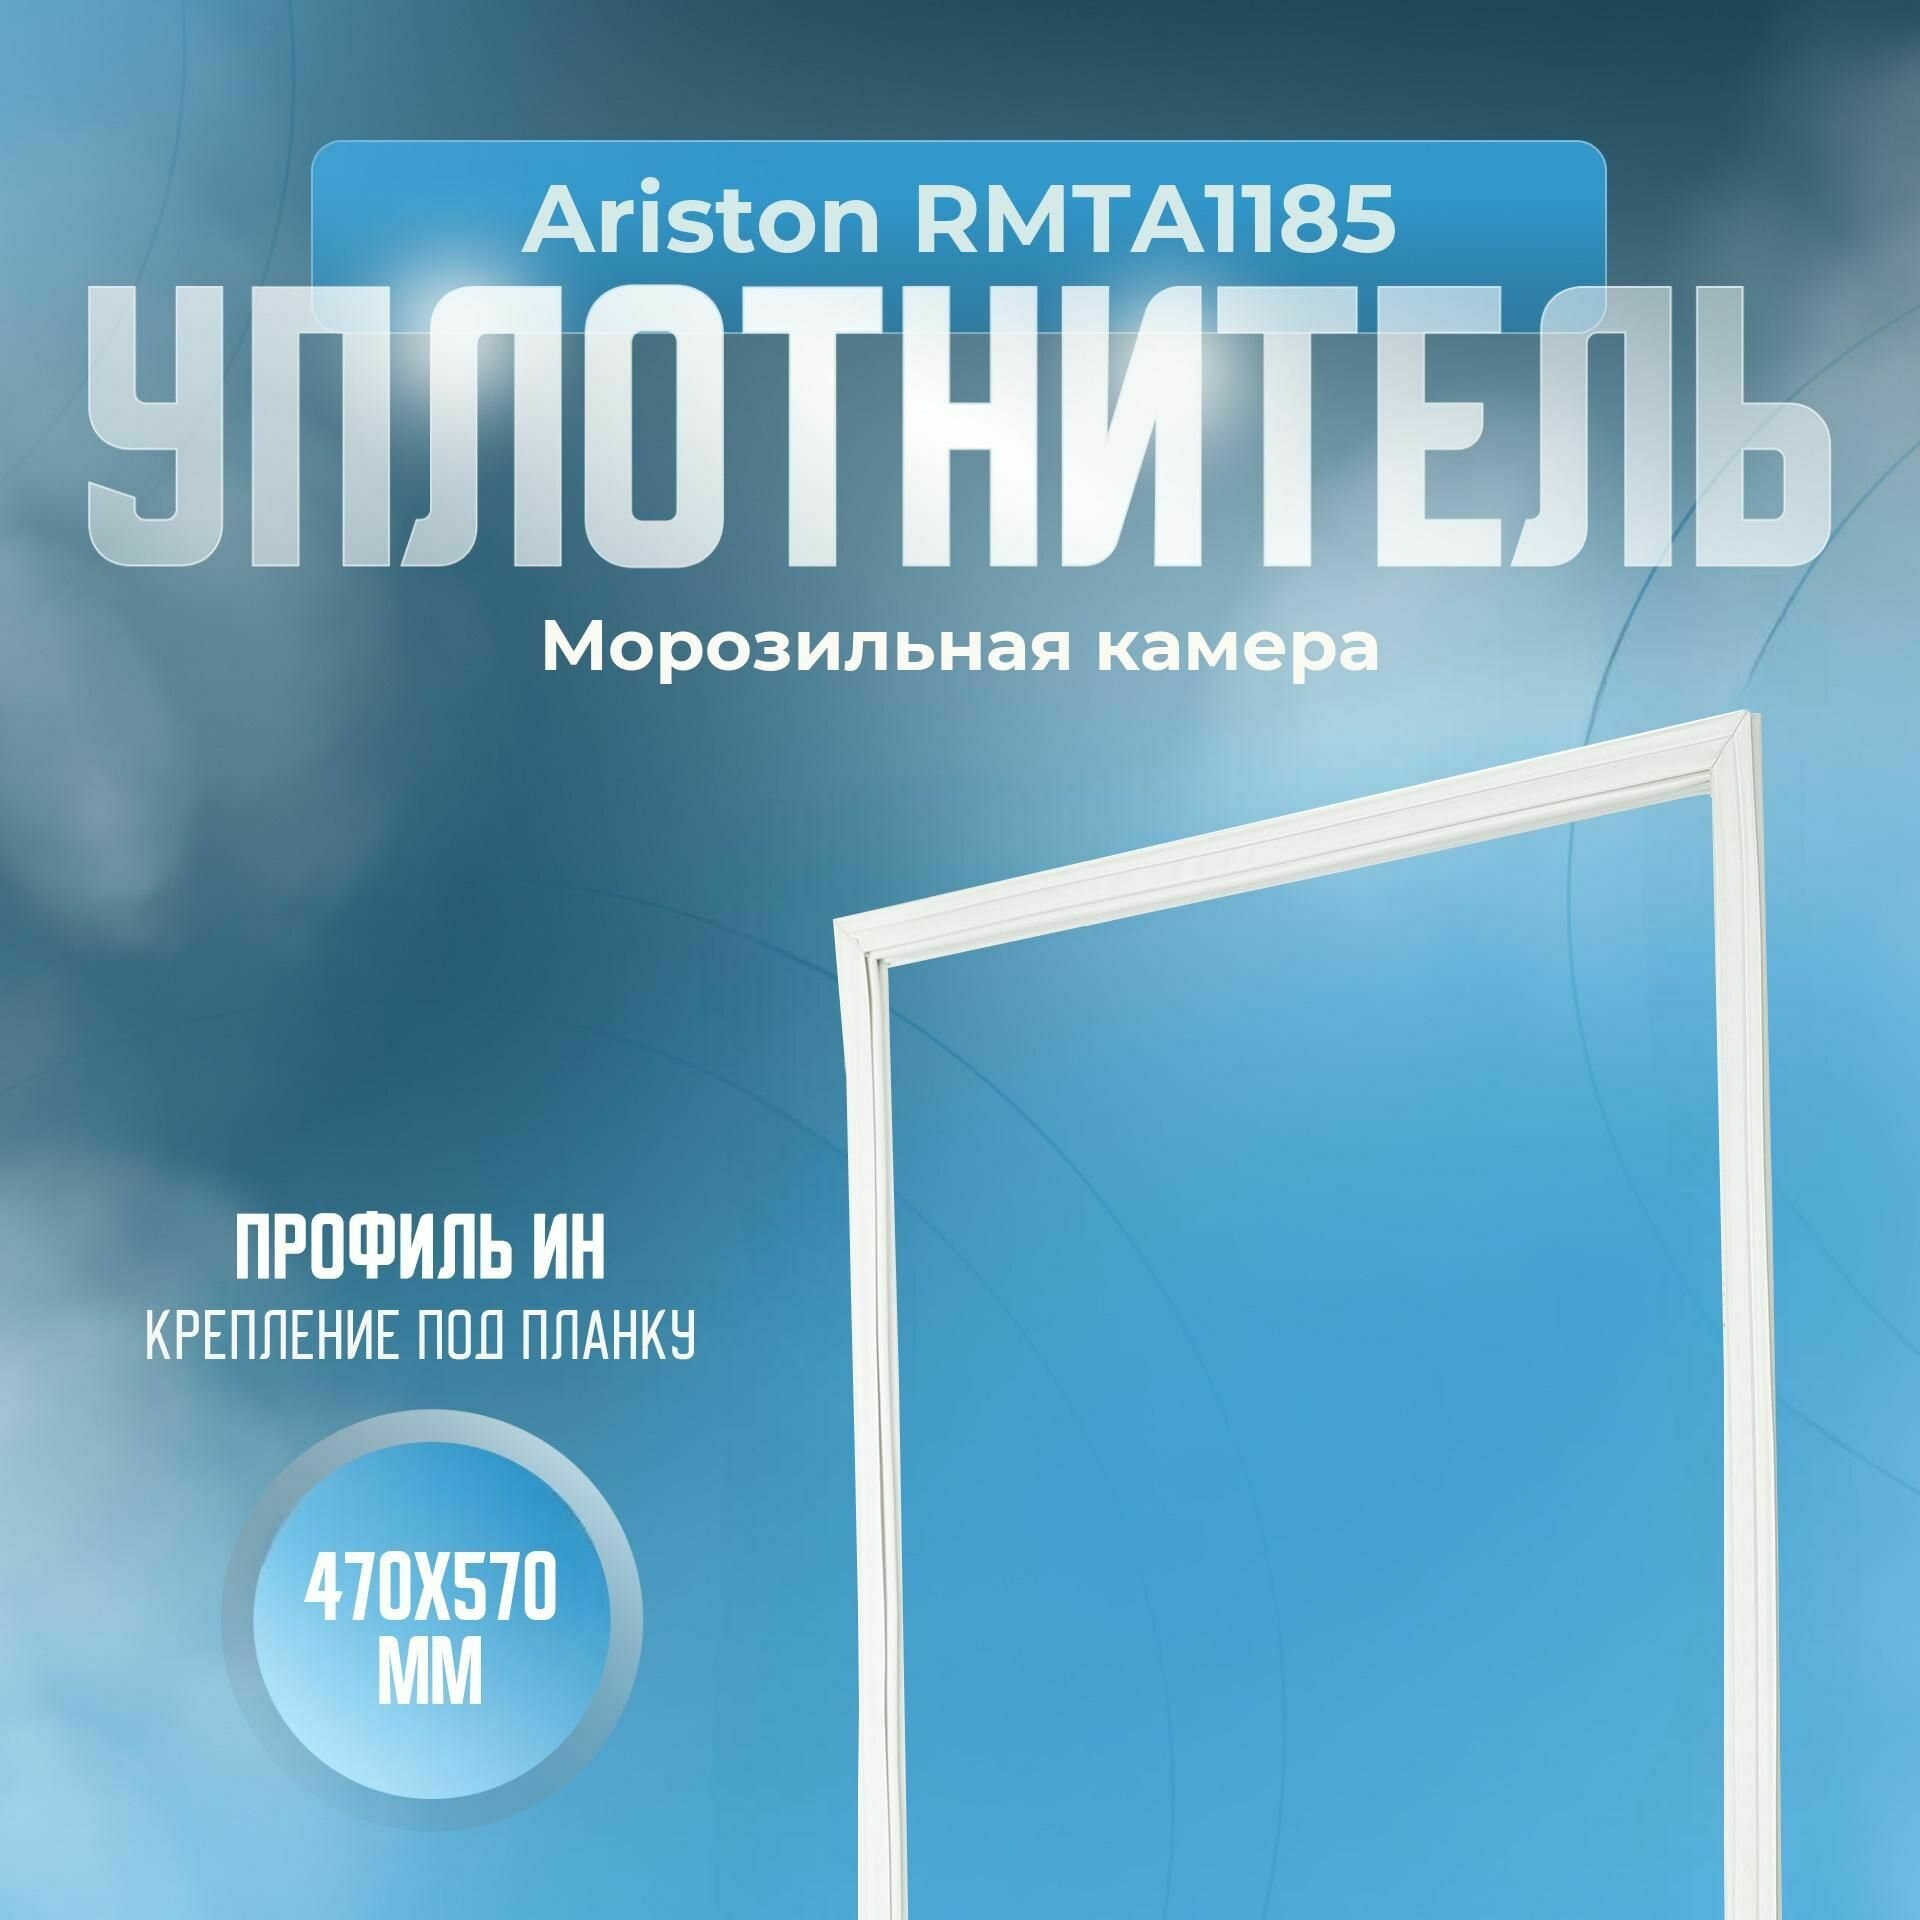 Уплотнитель Ariston RMTA1185. м. к, Размер - 470x570 мм. ИН